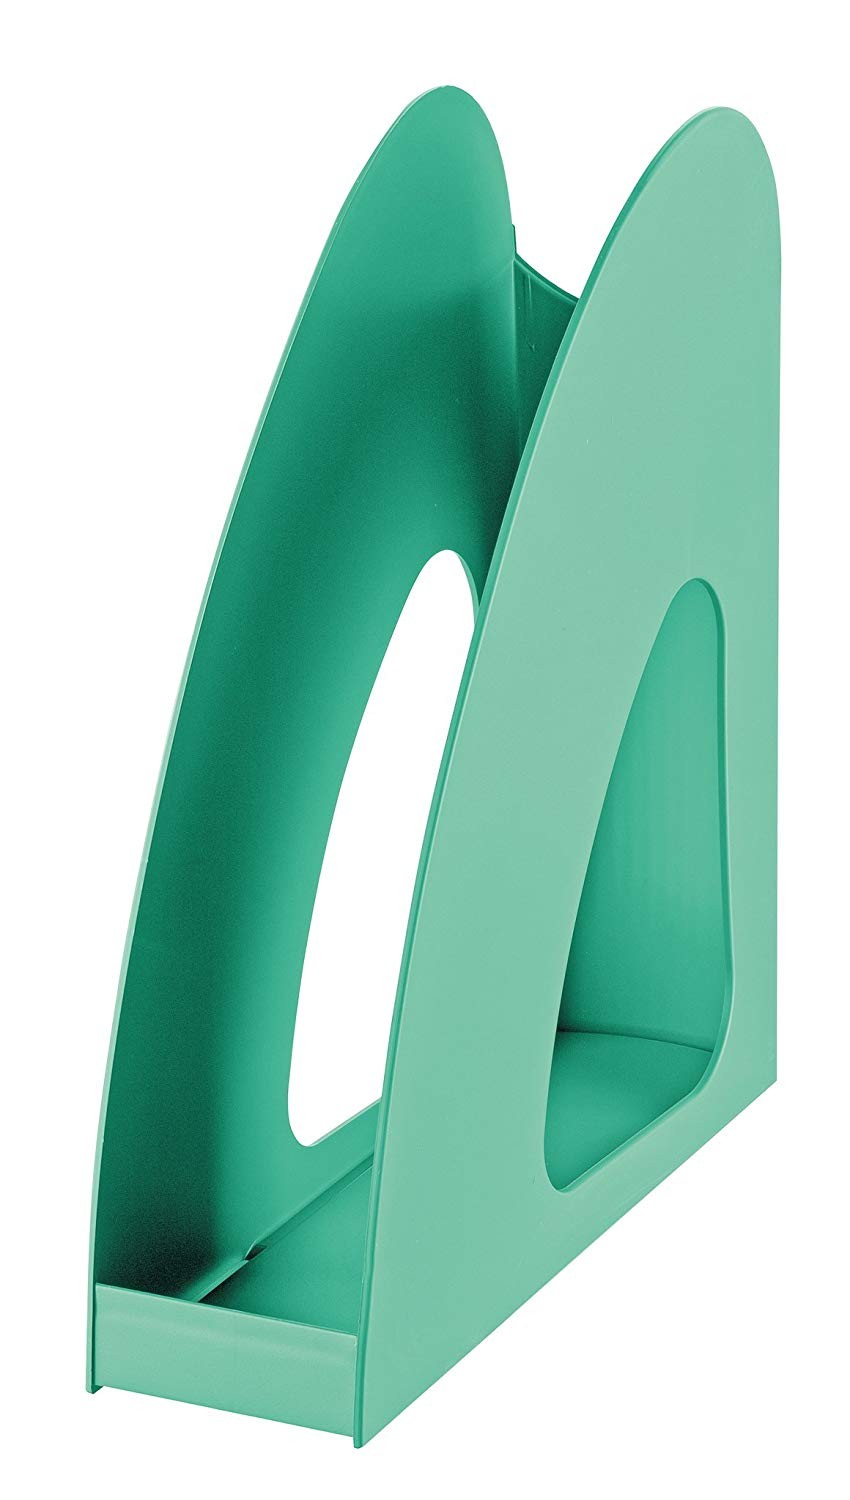 Suport vertical plastic pentru cataloage HAN Twin - verde jad